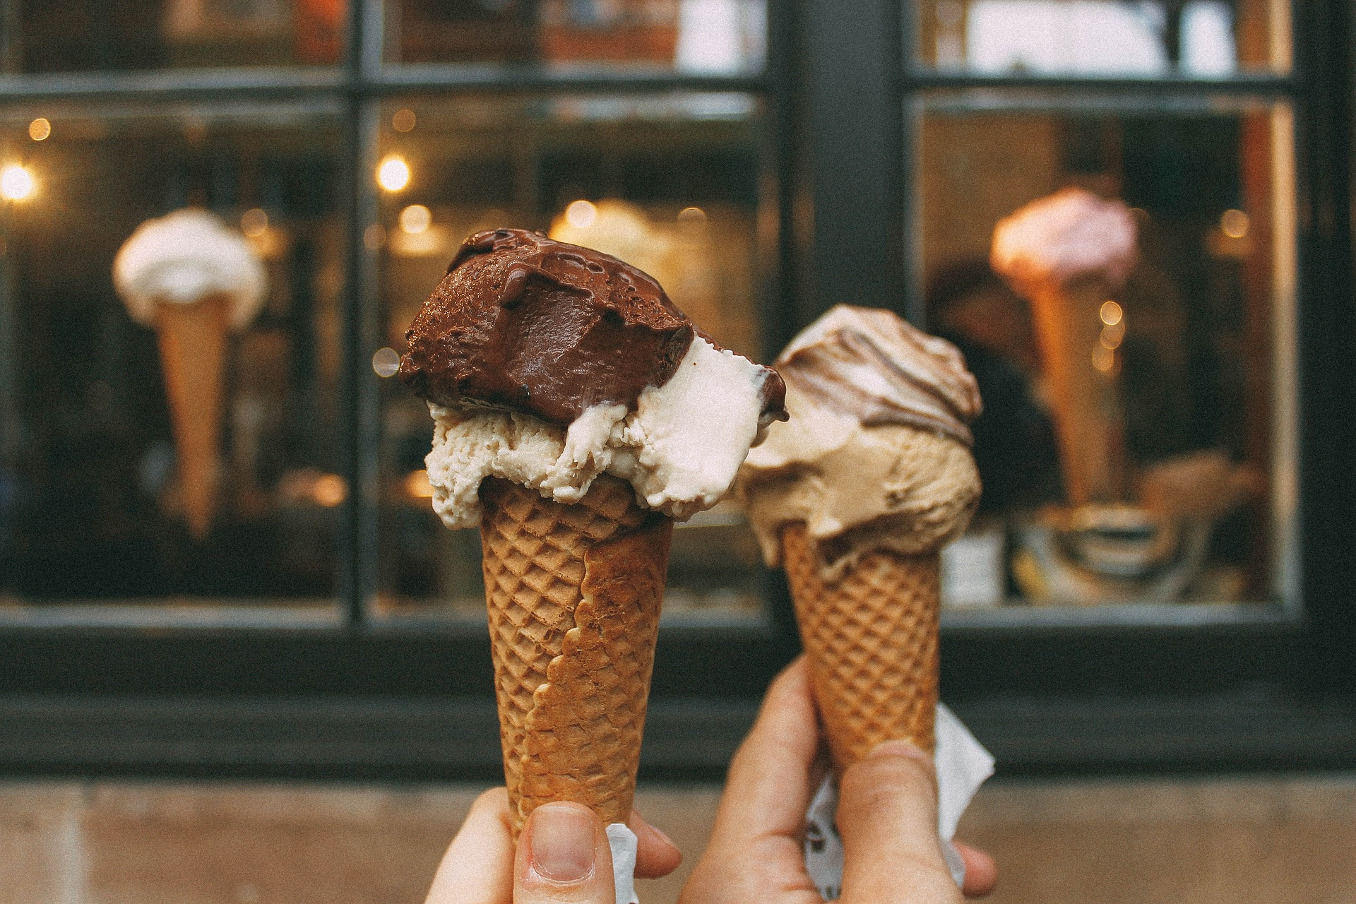 Una heladería de Florencia, multada al cobrar 25 euros por un helado a un turista tras ocultar la lista de precios